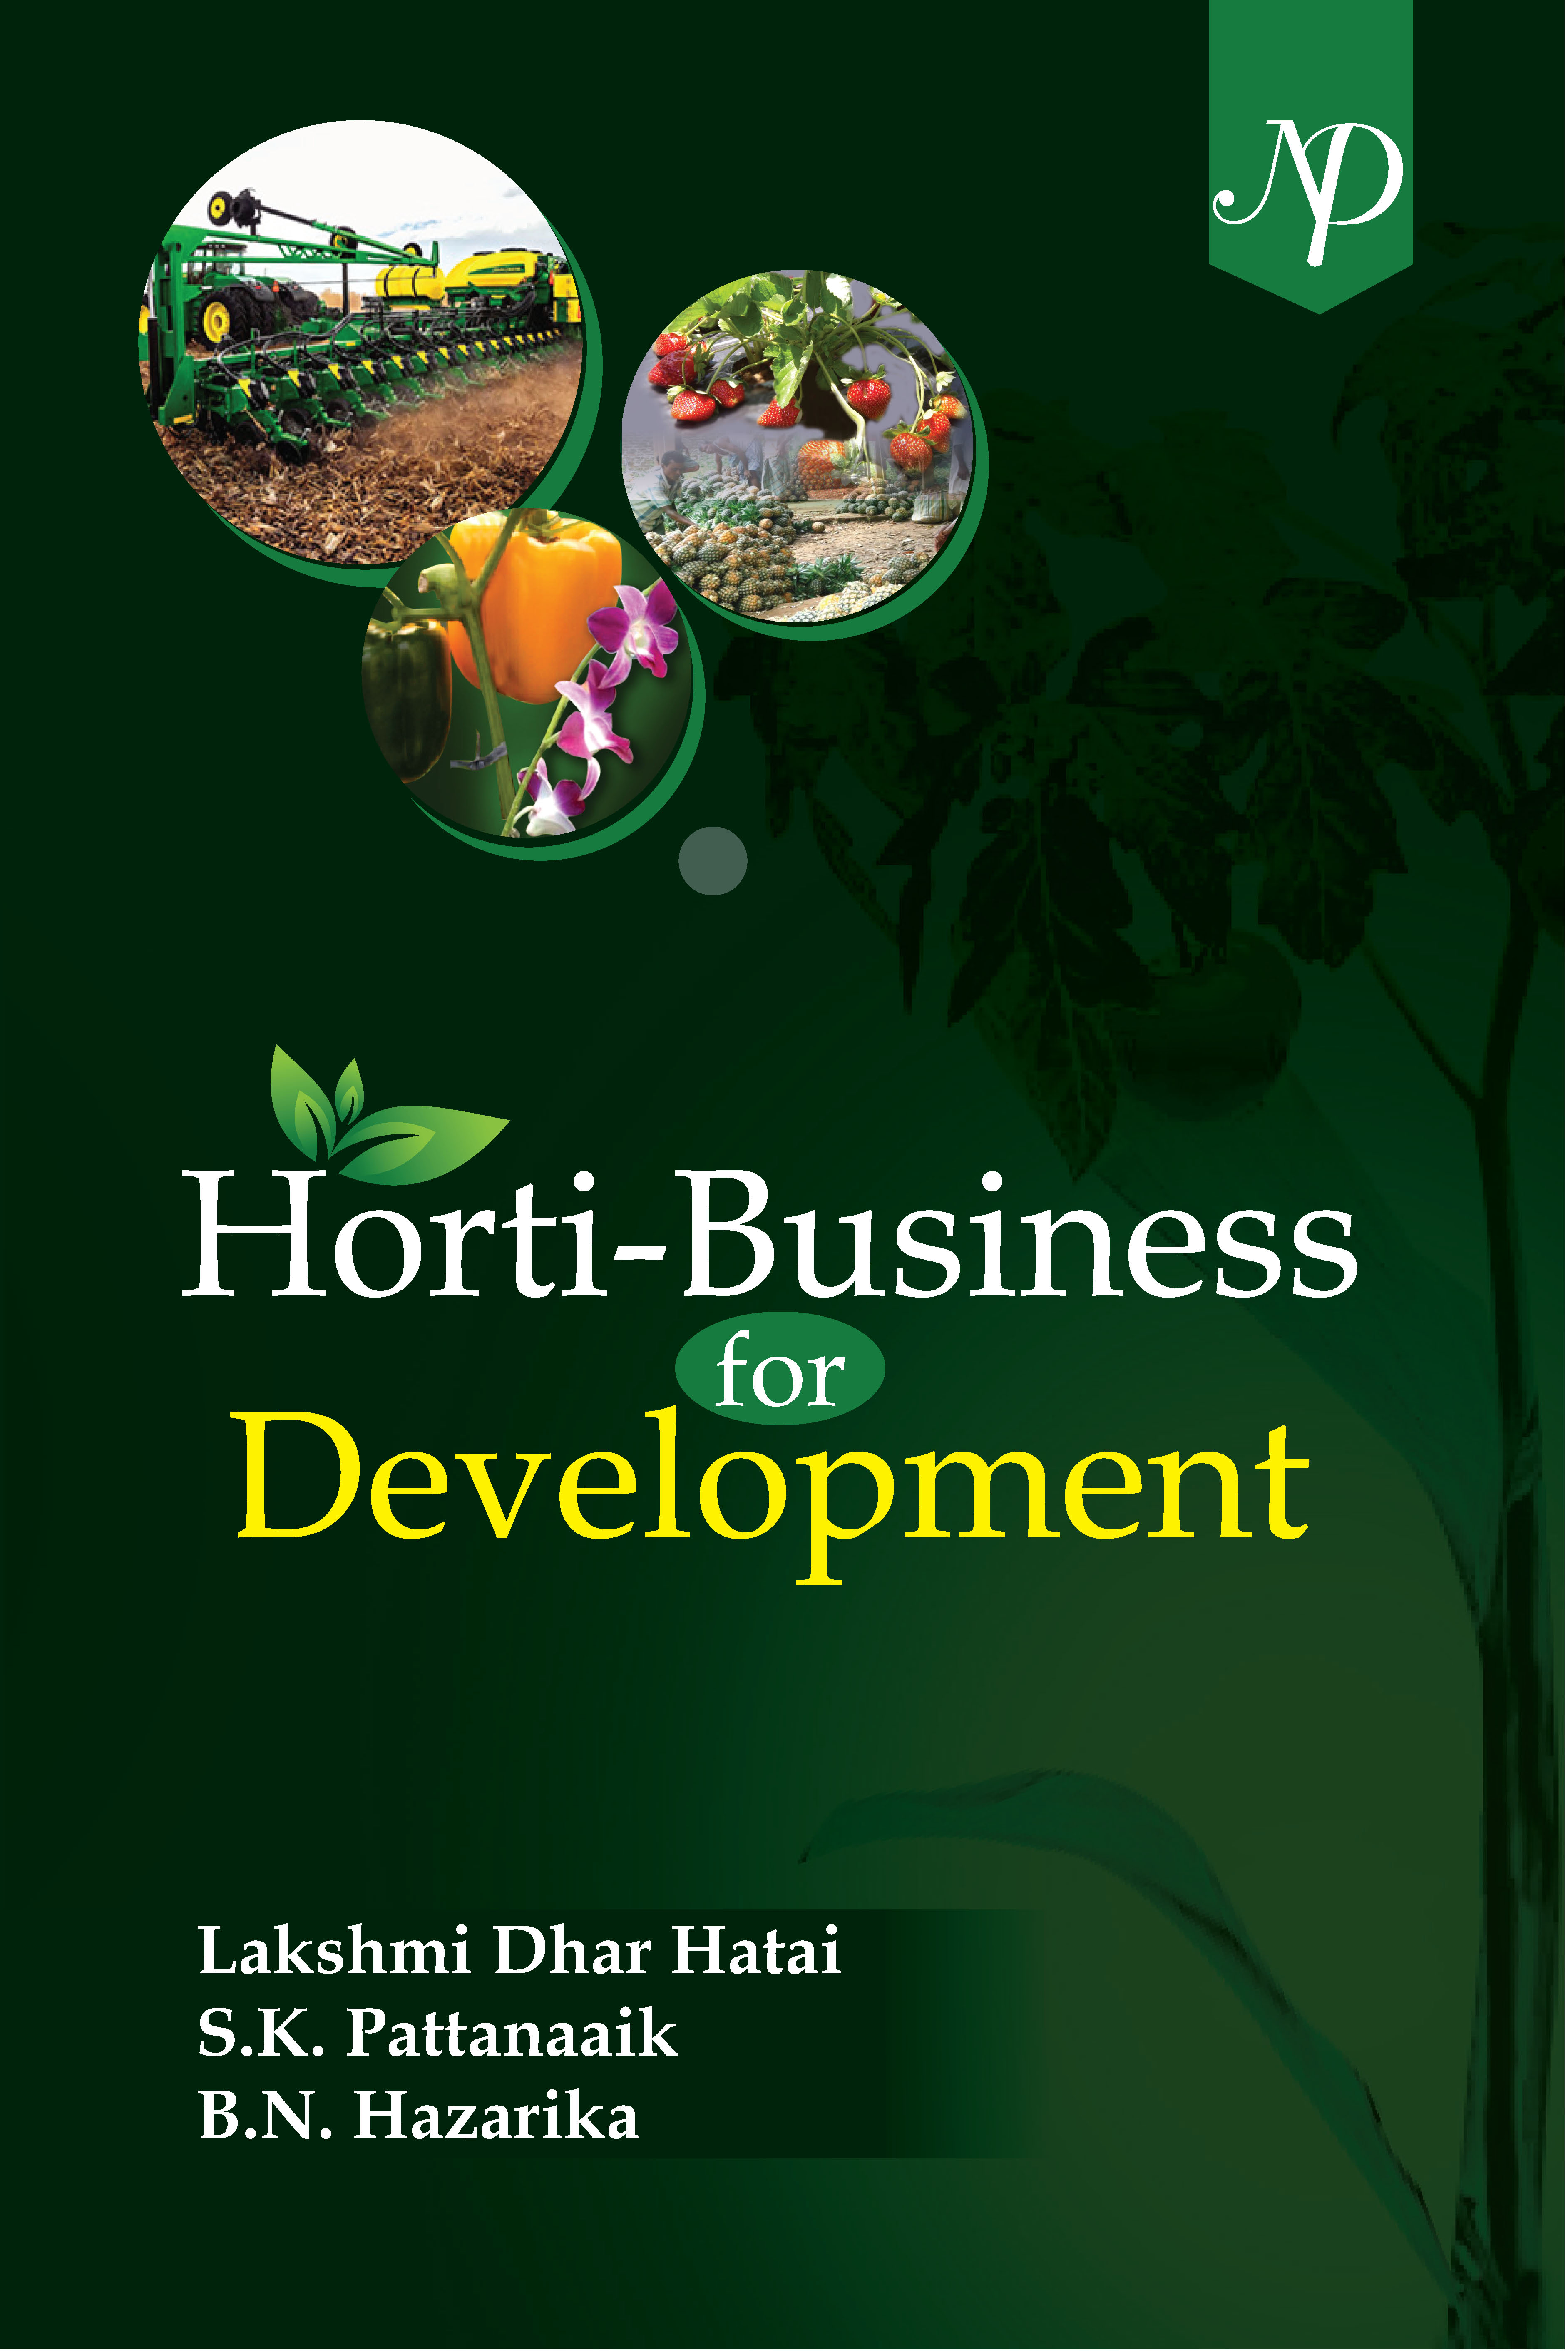 Horti-Business for Development Cover.jpg